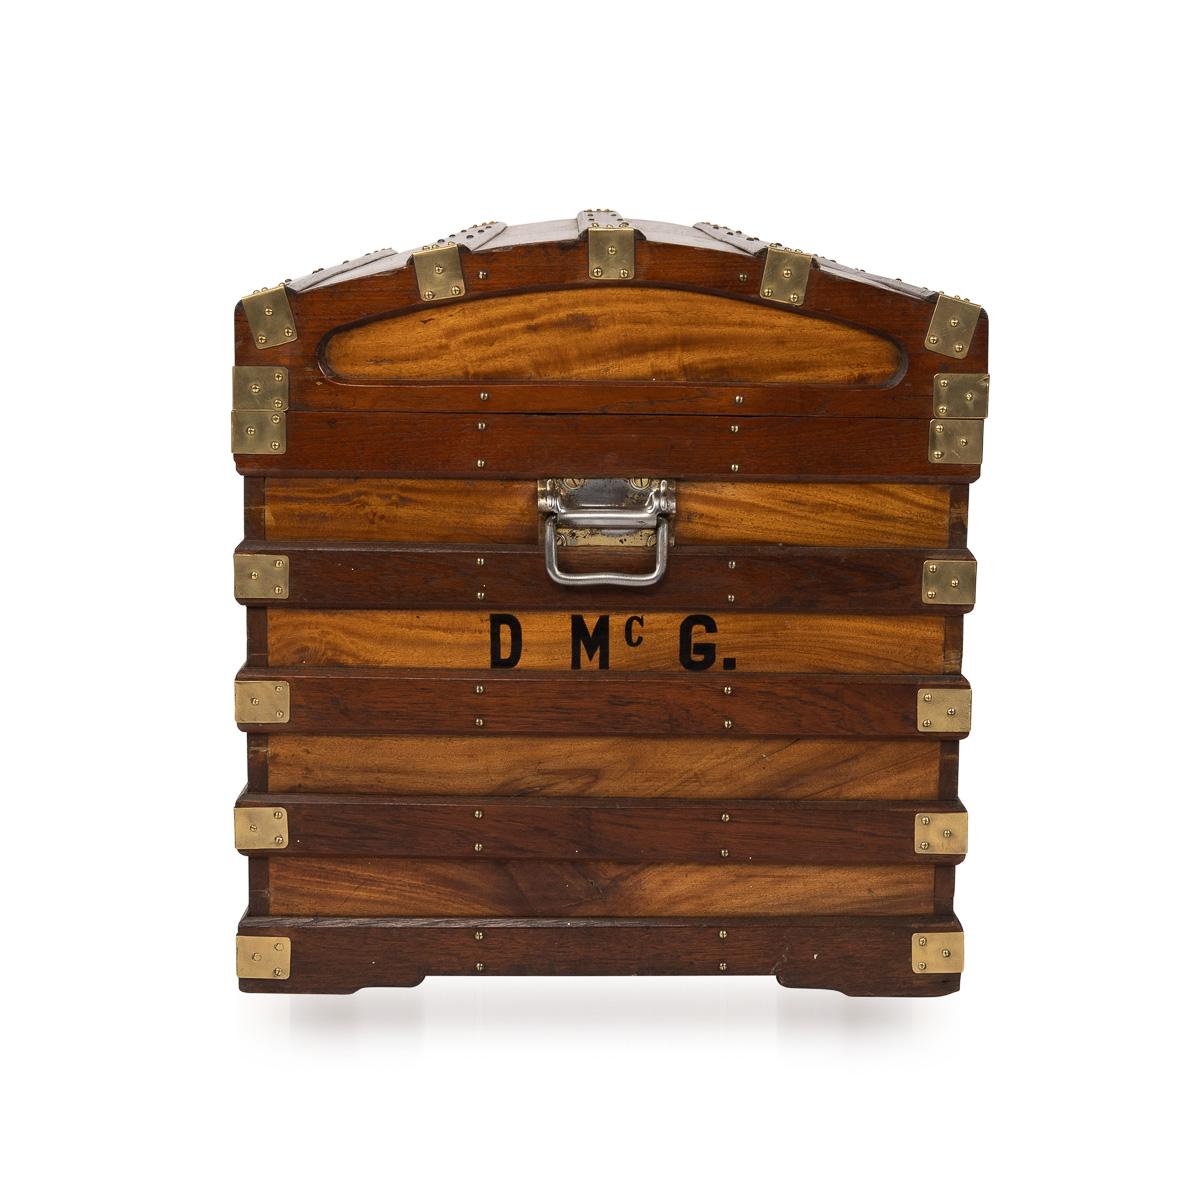 Antiker Schiffskoffer aus Teak und Mahagoni mit gewölbtem Deckel, beschriftet mit Initialen, mit Messingbeschlägen an den Ecken und Griffen, mit zwei funktionierenden Originalschlössern mit Schlüsseln.

